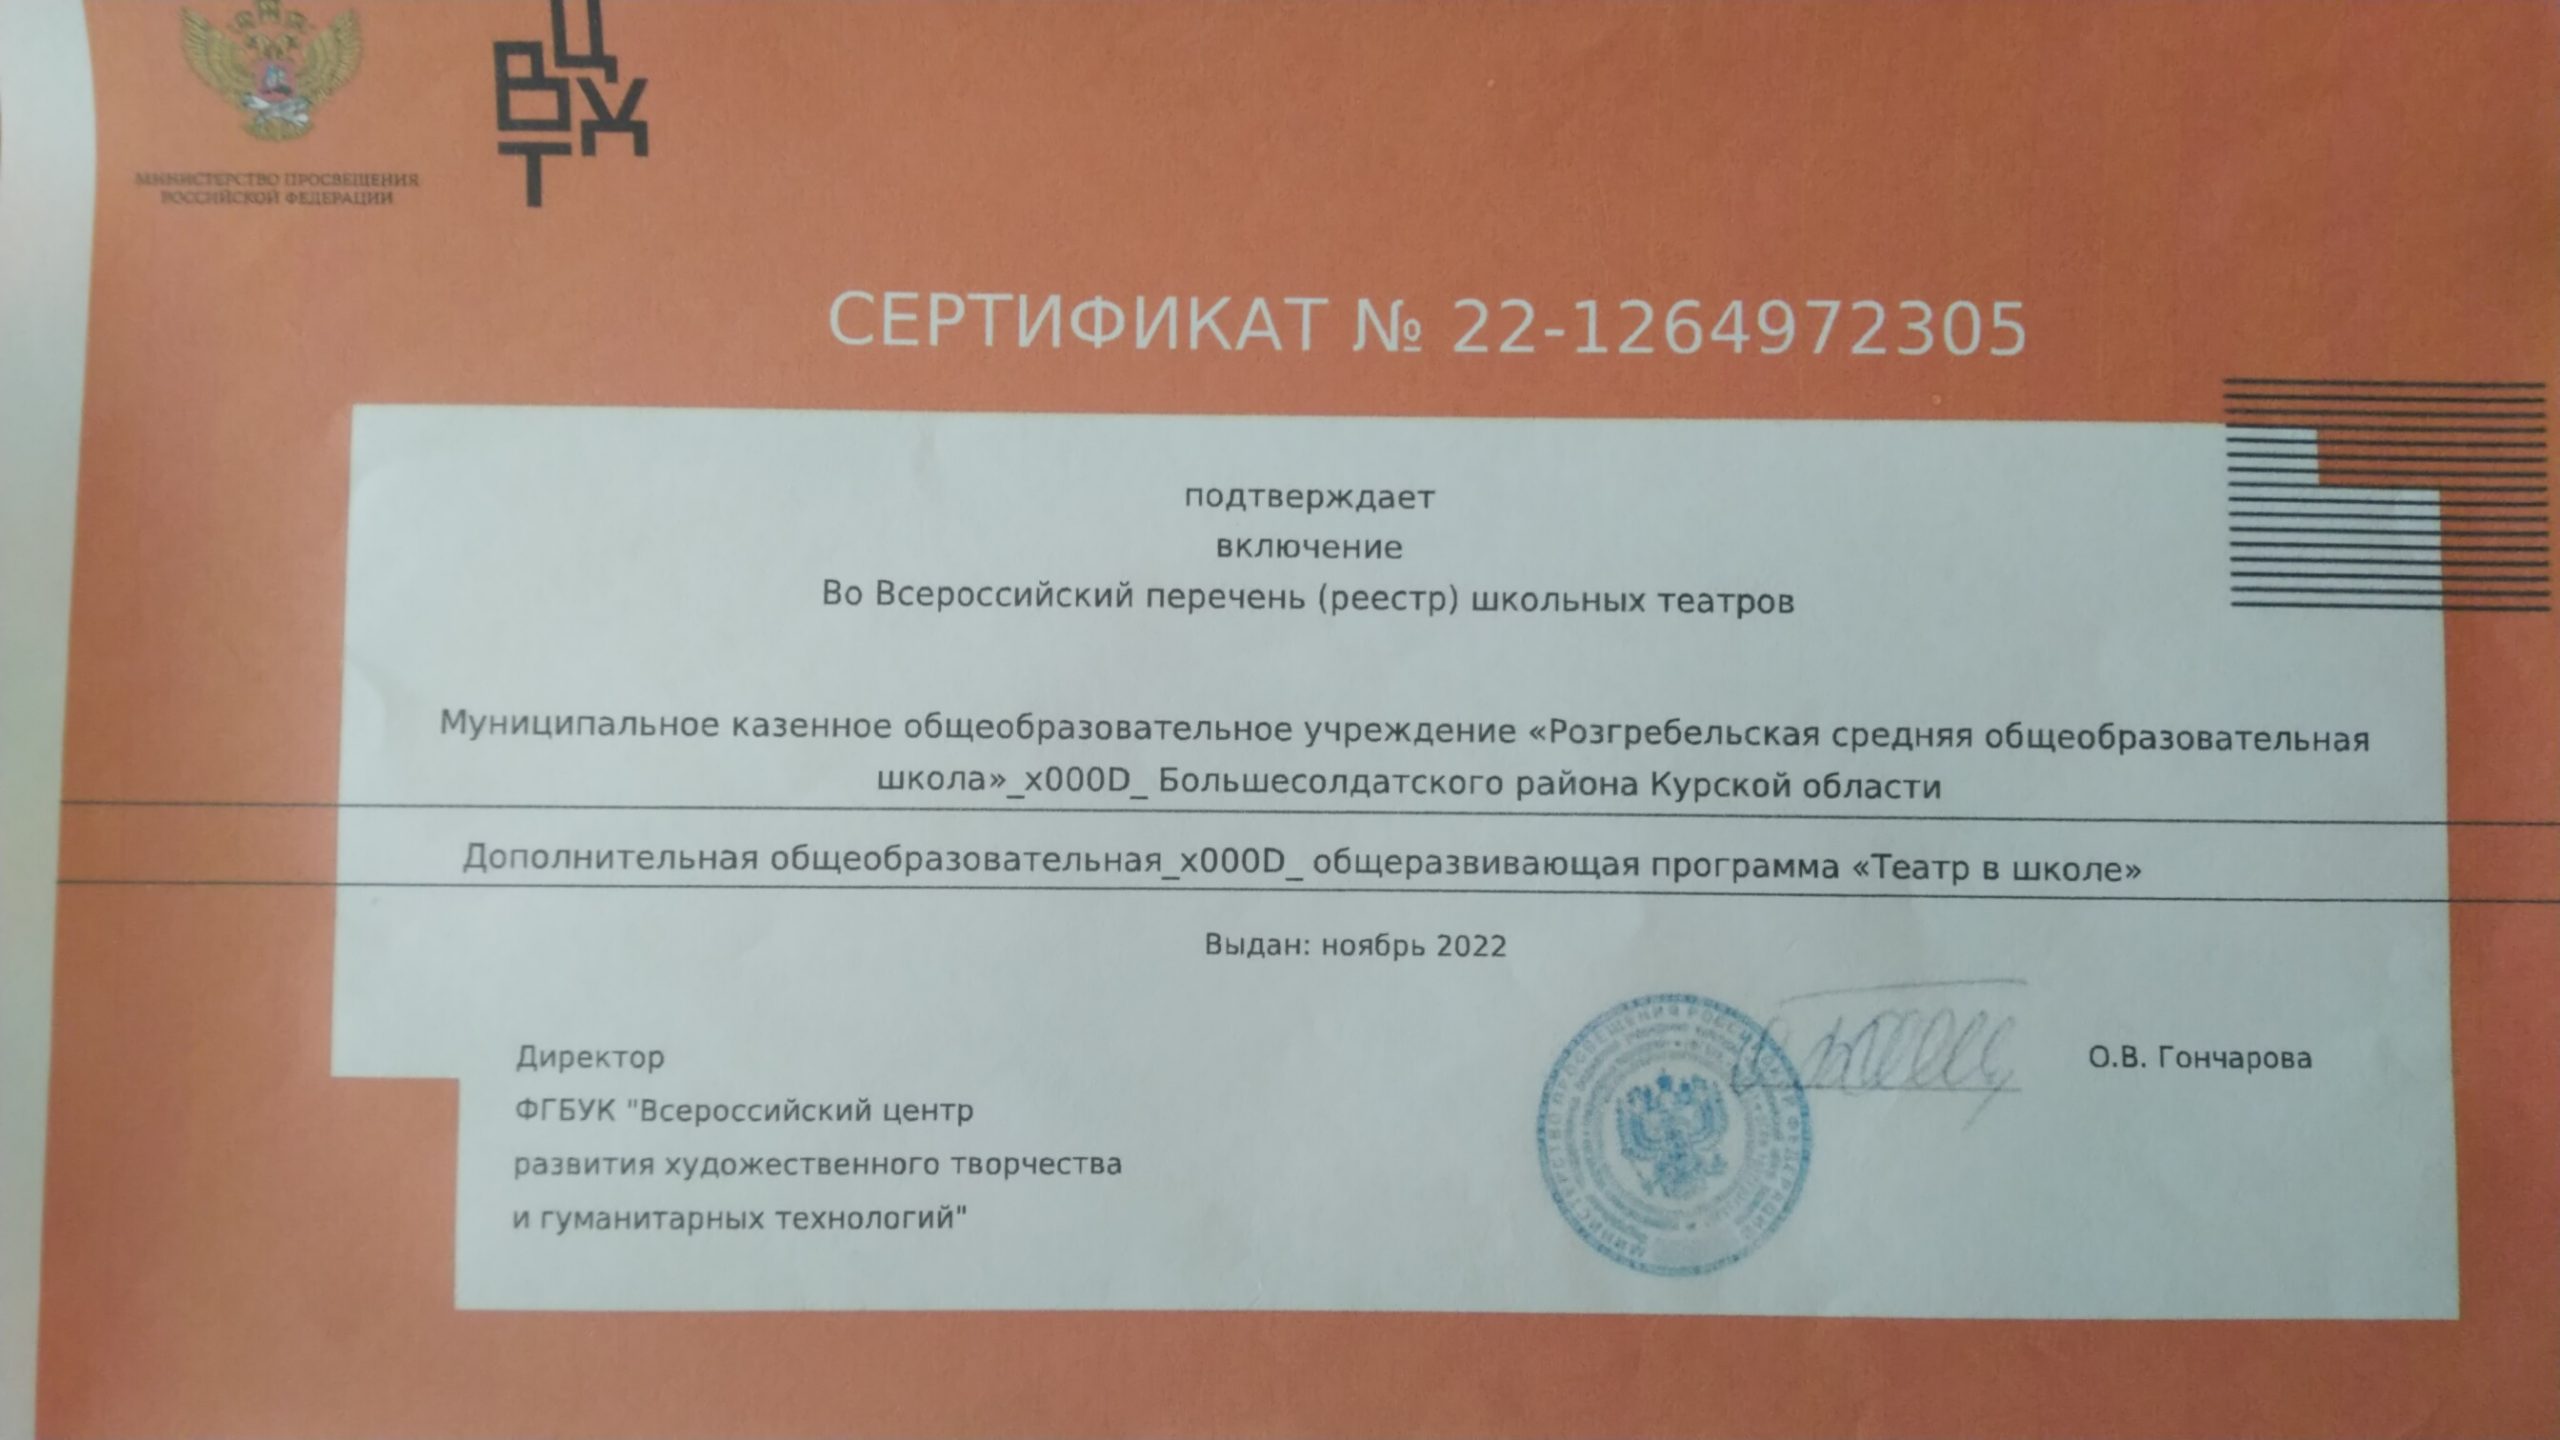 Сертификат о включении во Всероссийский реестр театров